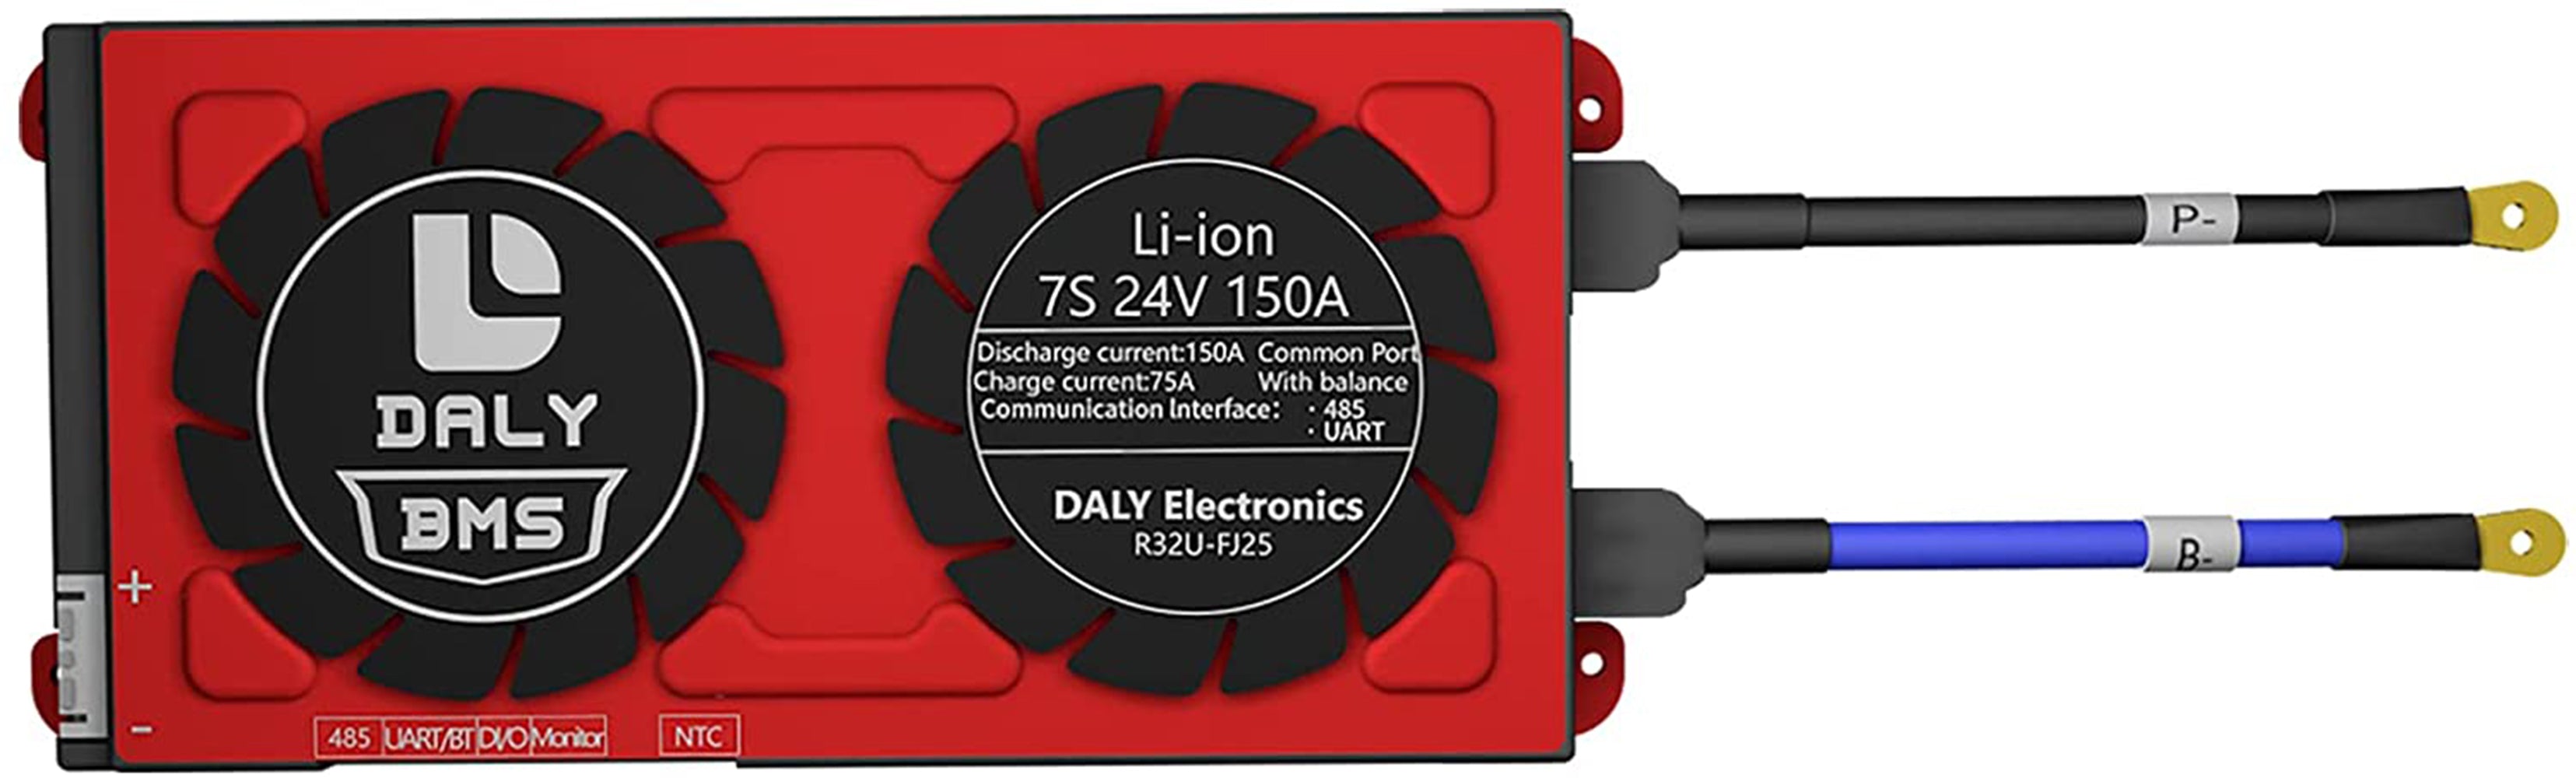 Daly smart bms Li-ion 7S 24V 150A bluetooth 2095212